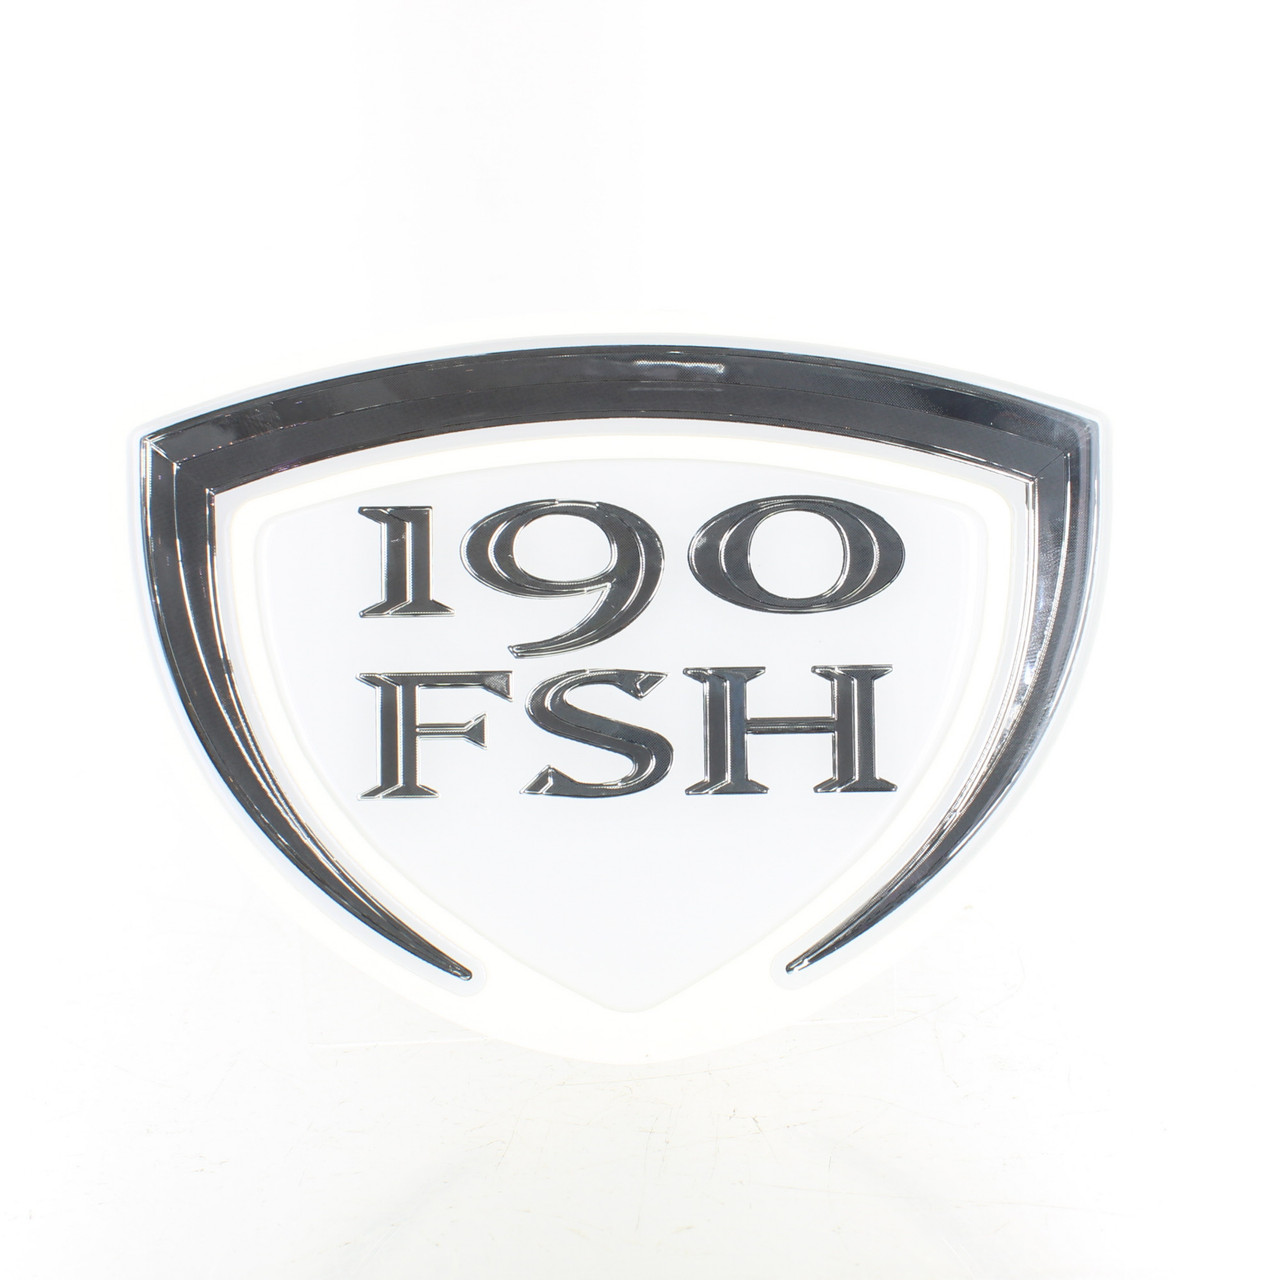 Yamaha New OEM 190FSH Decal/Emblem, F3M-U4125-00-00